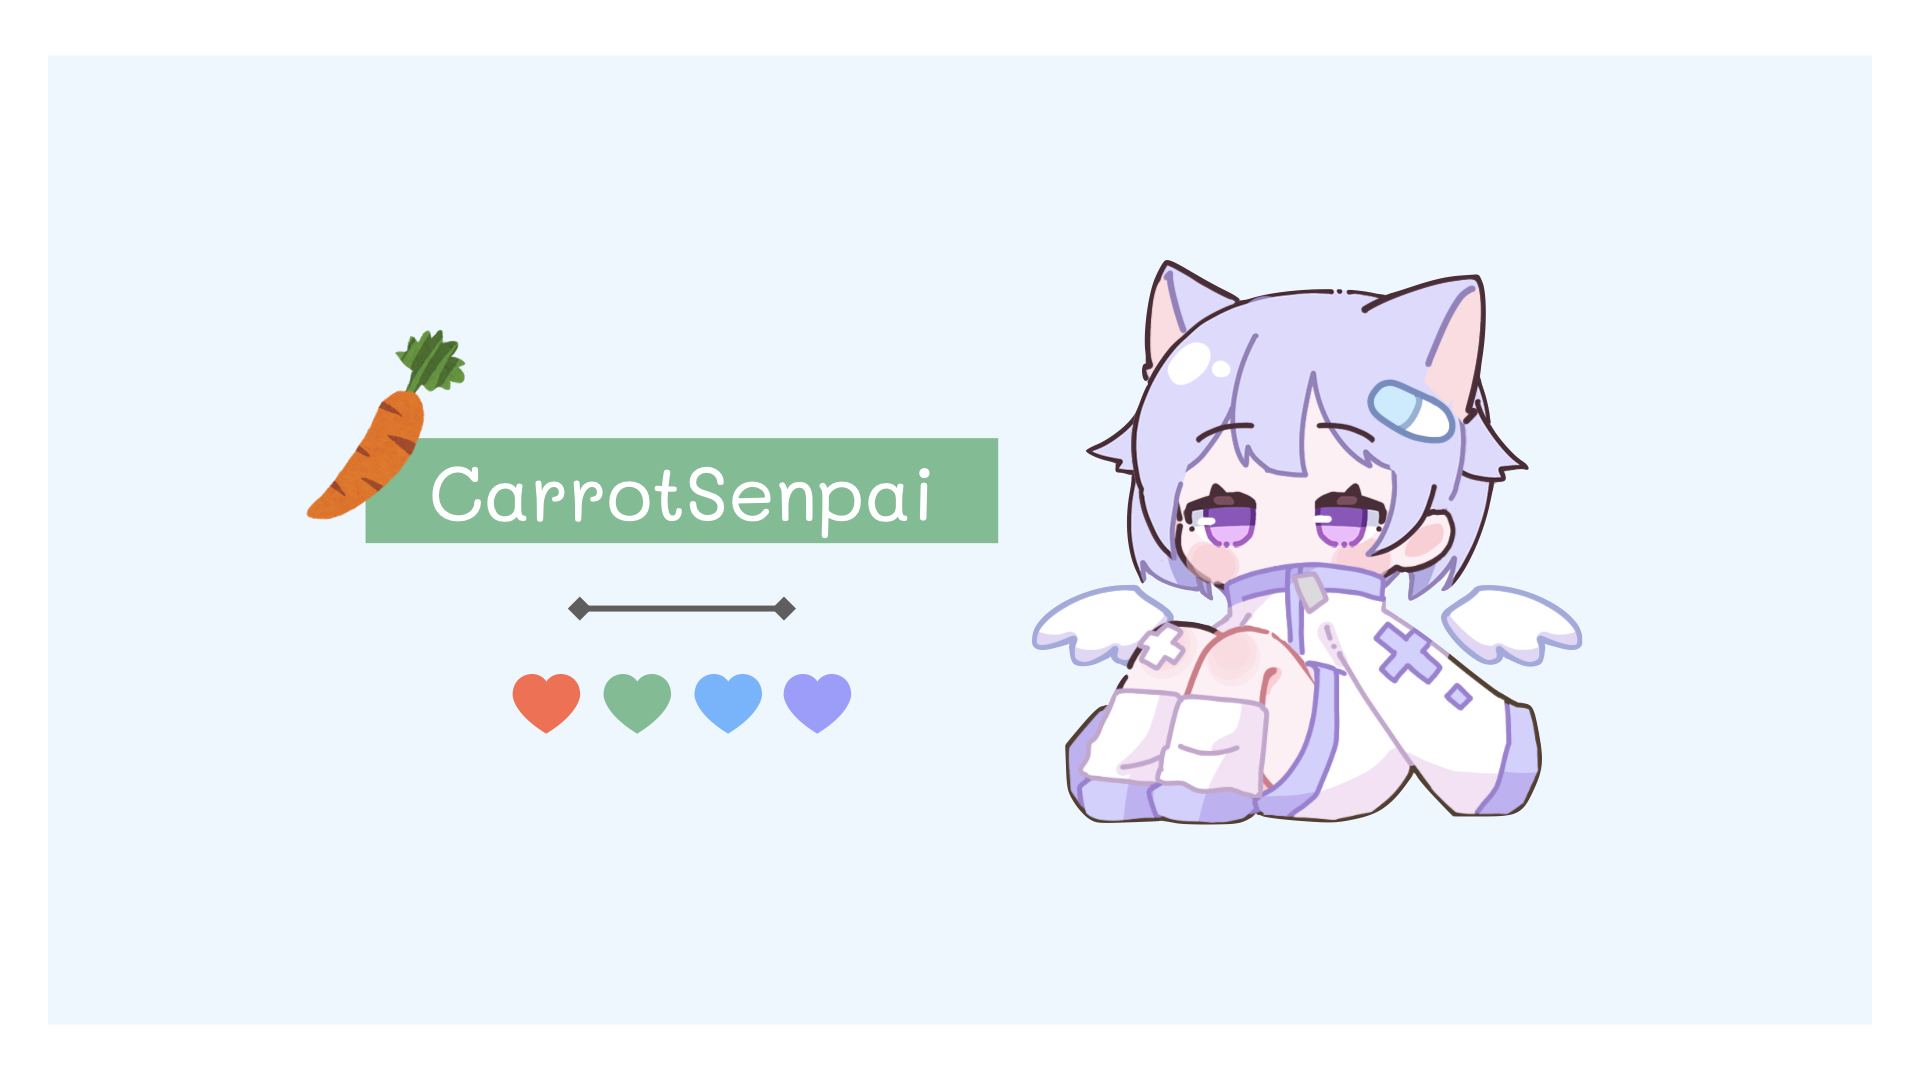 CarrotSenpai